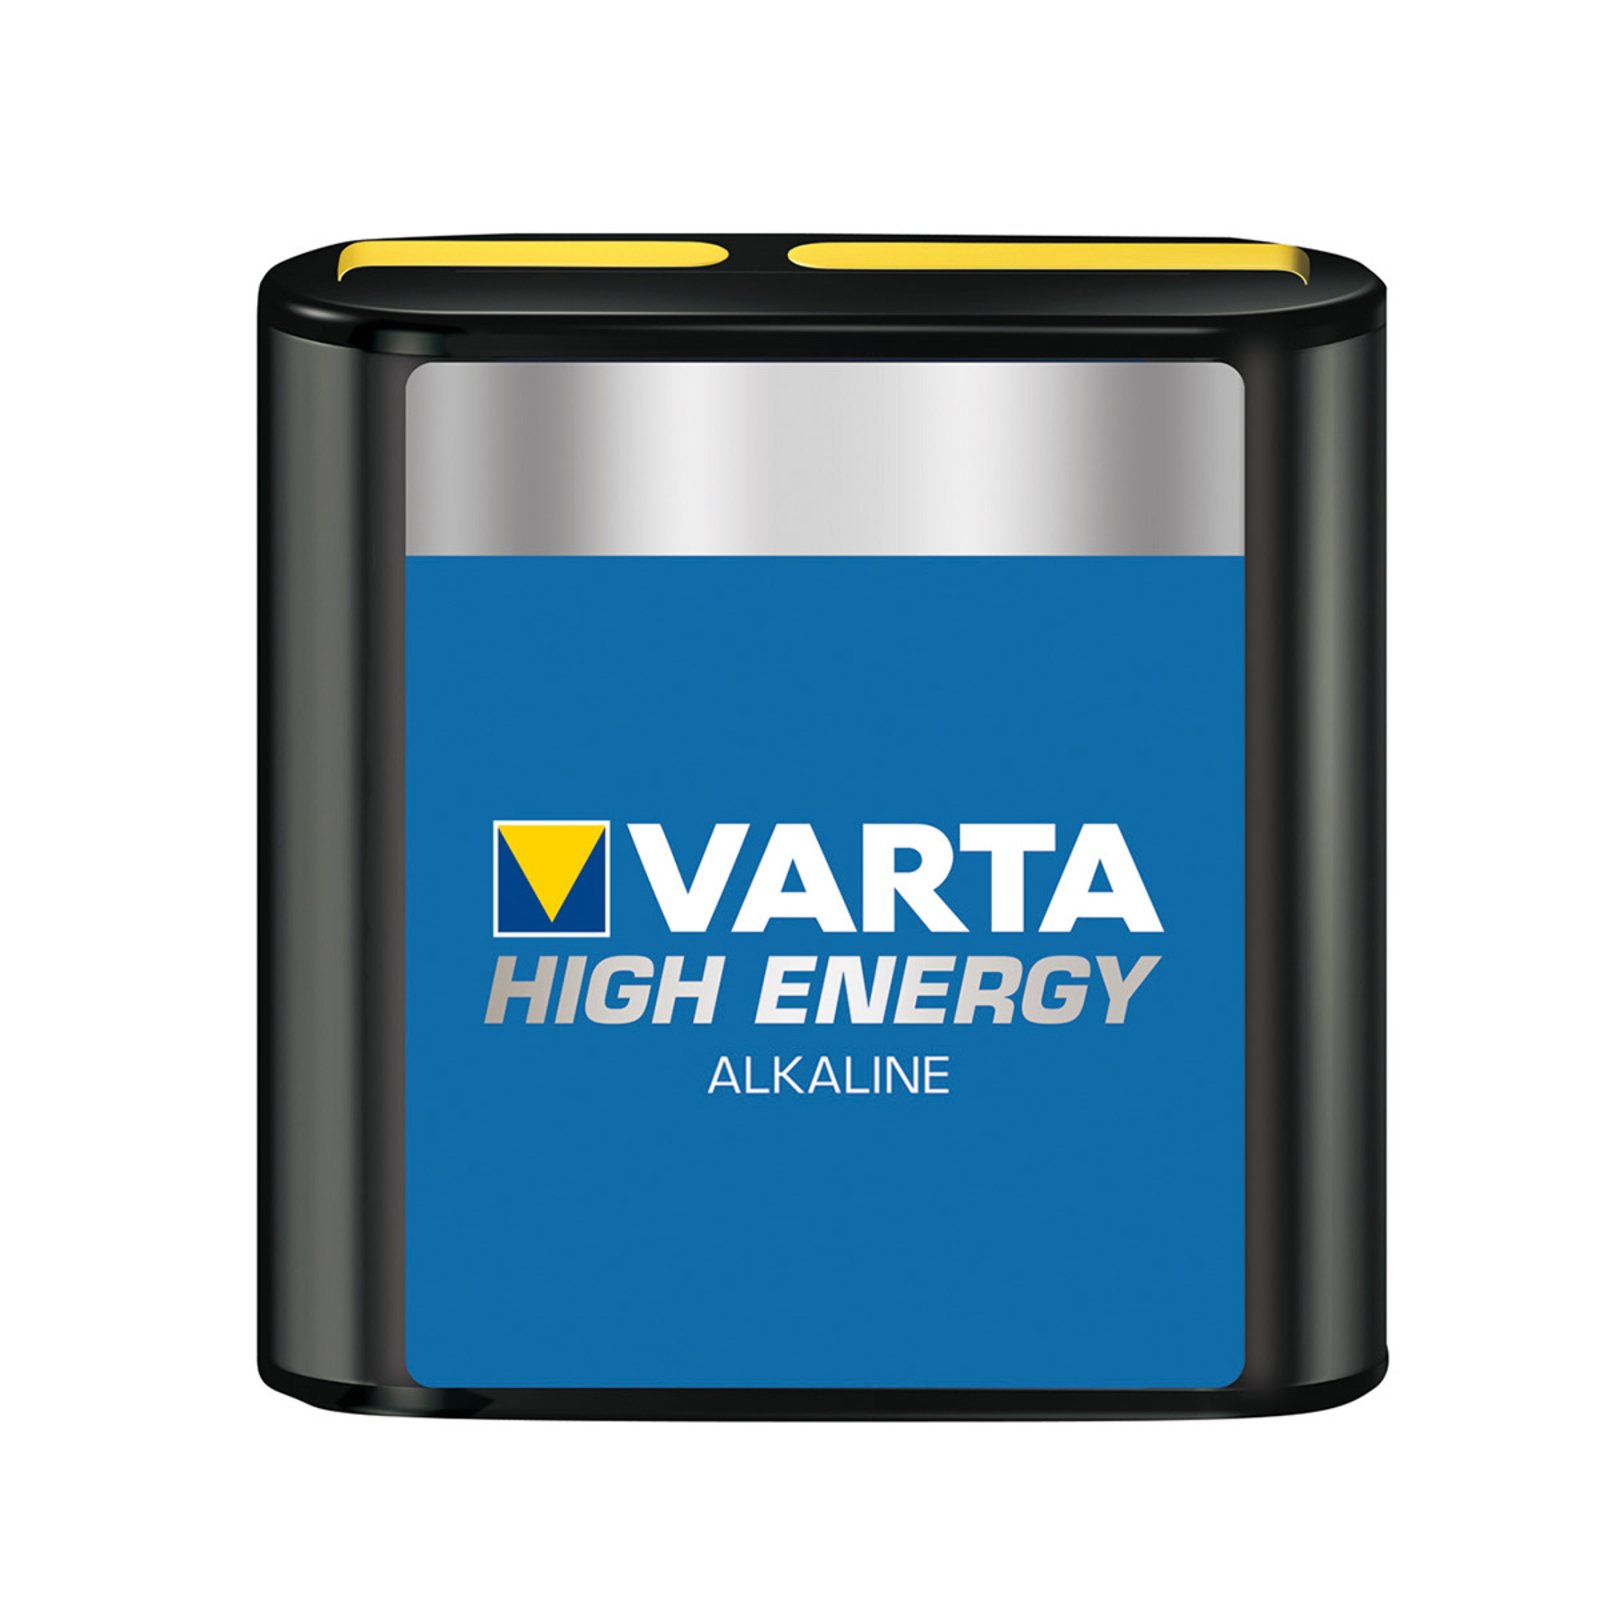 High Energy, 4,5V batteri til flade lygter